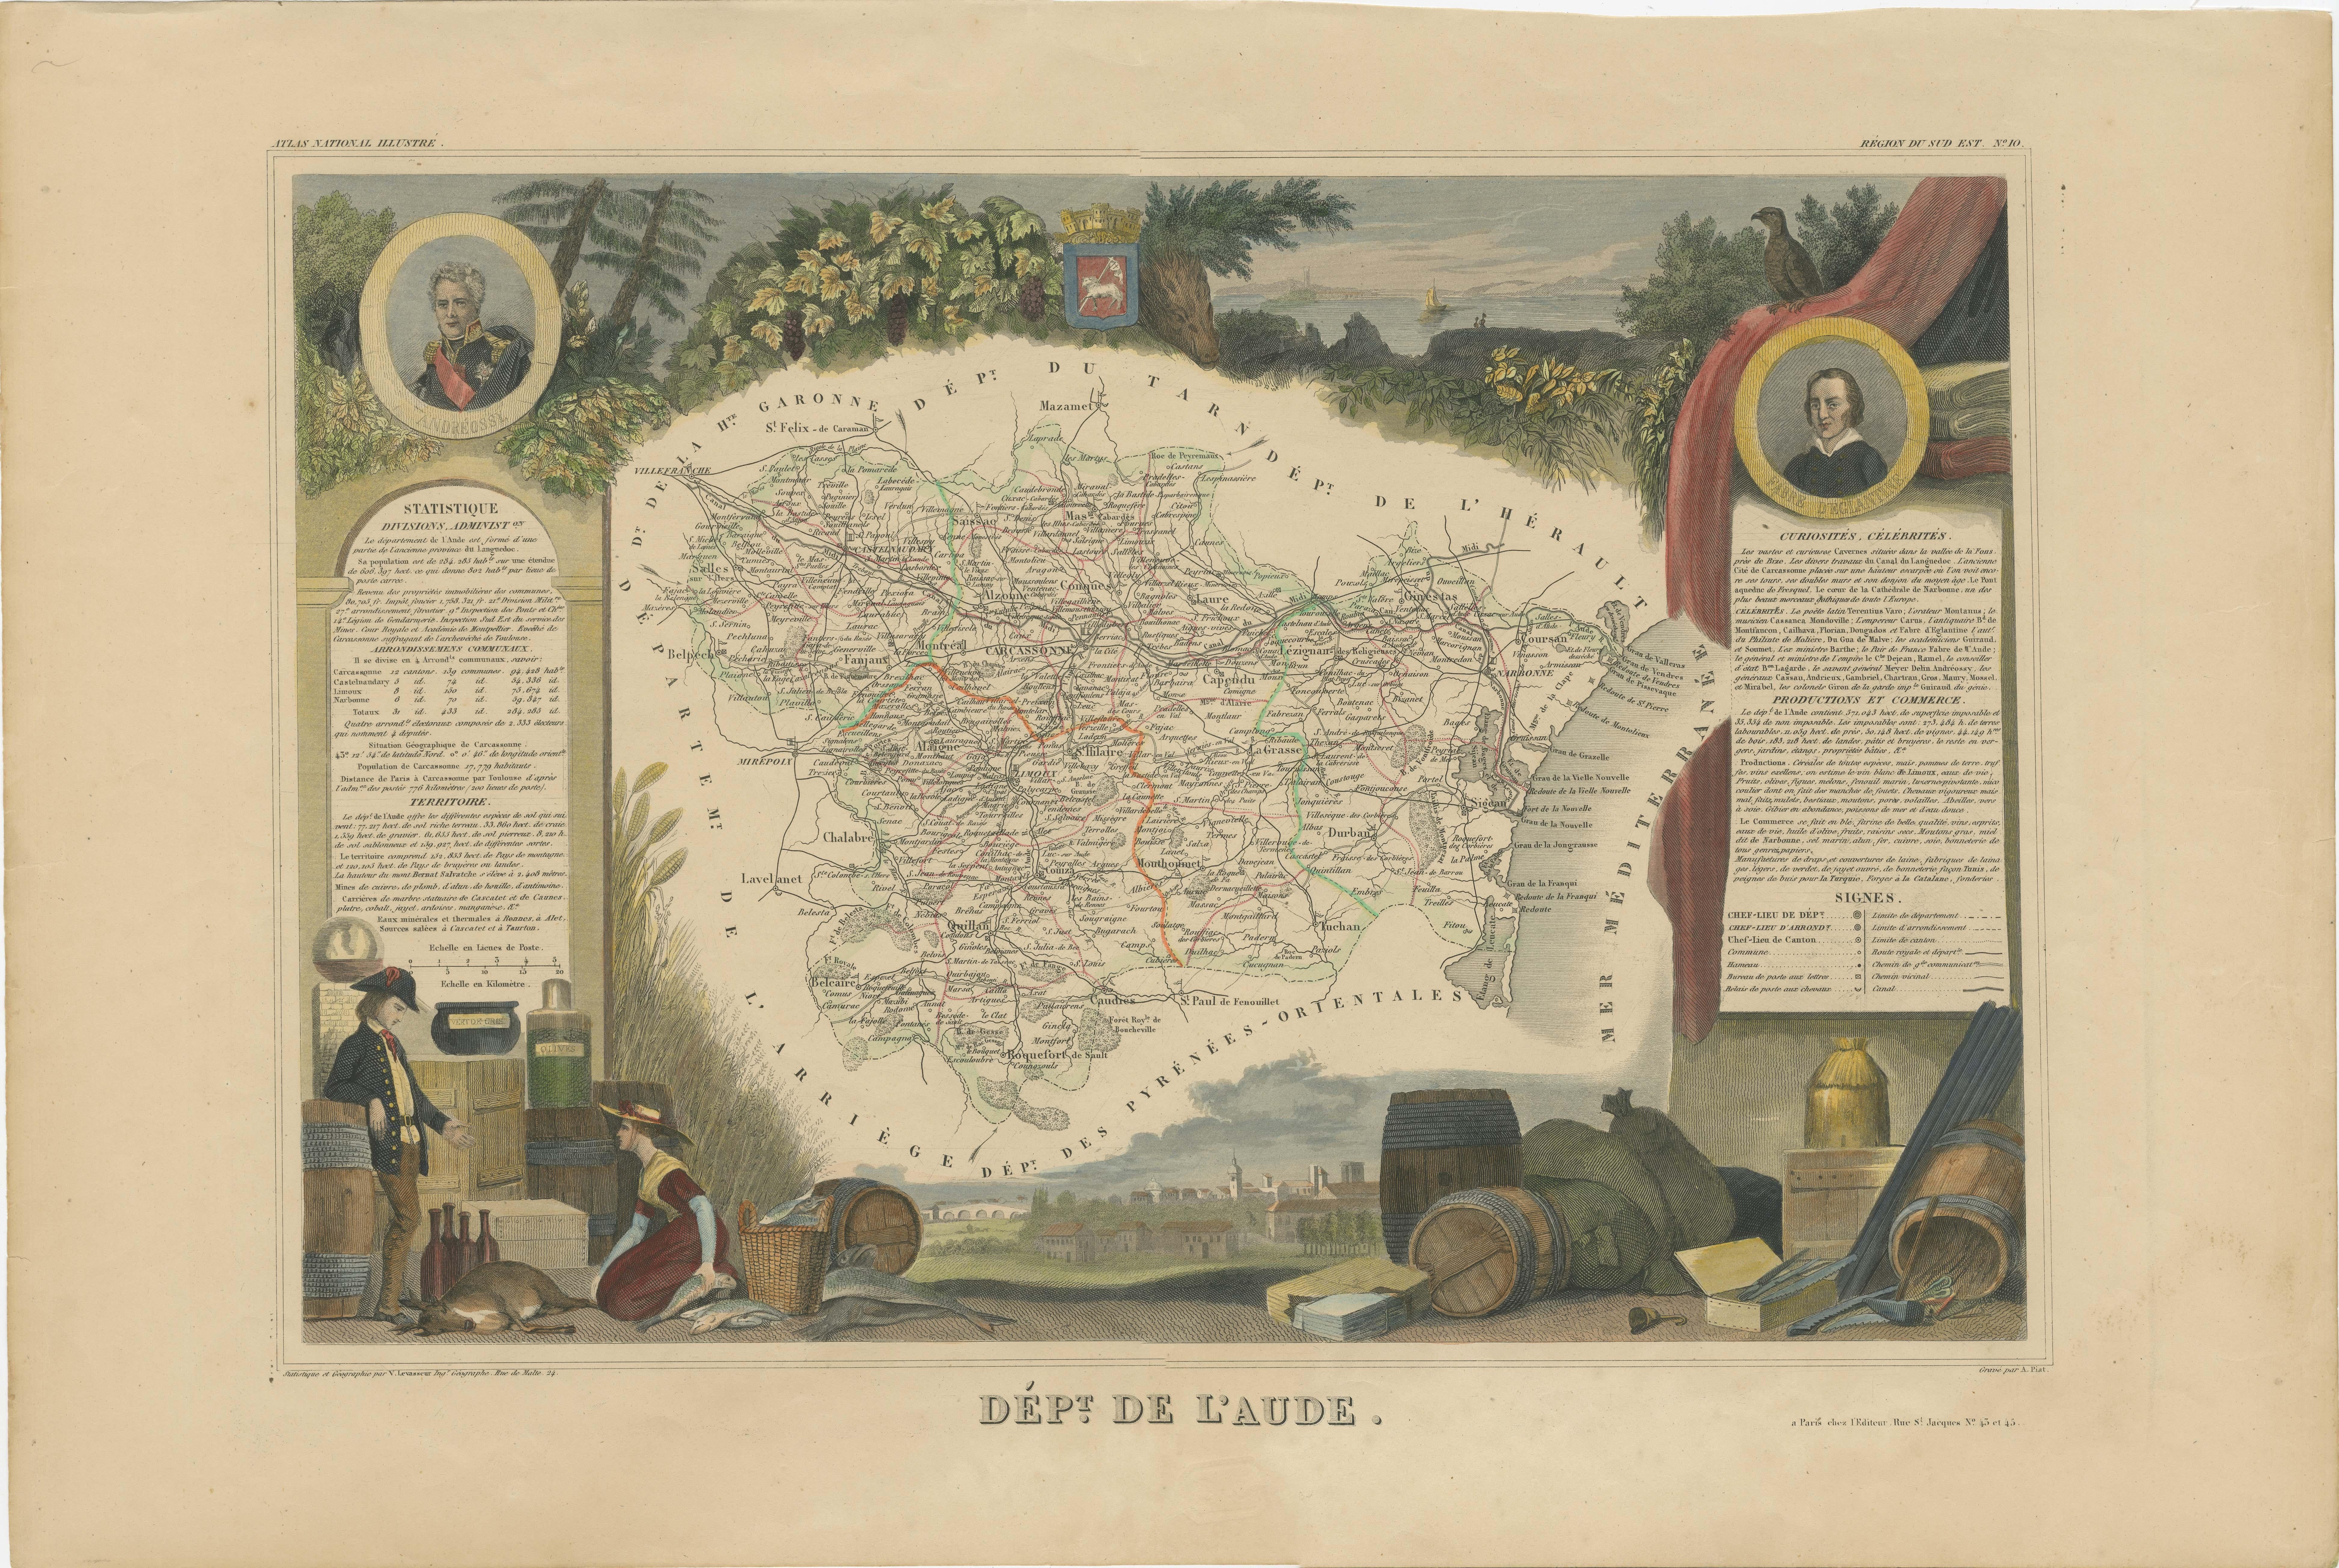 Antike Karte mit dem Titel 'Dépt. de l'Aude'. Karte des französischen Departements Aude, Frankreich. Diese Region Frankreichs ist berühmt für ihre große Vielfalt an Weinbergen und die Weinproduktion. Im Osten liegen die Weine von Corbieres und La